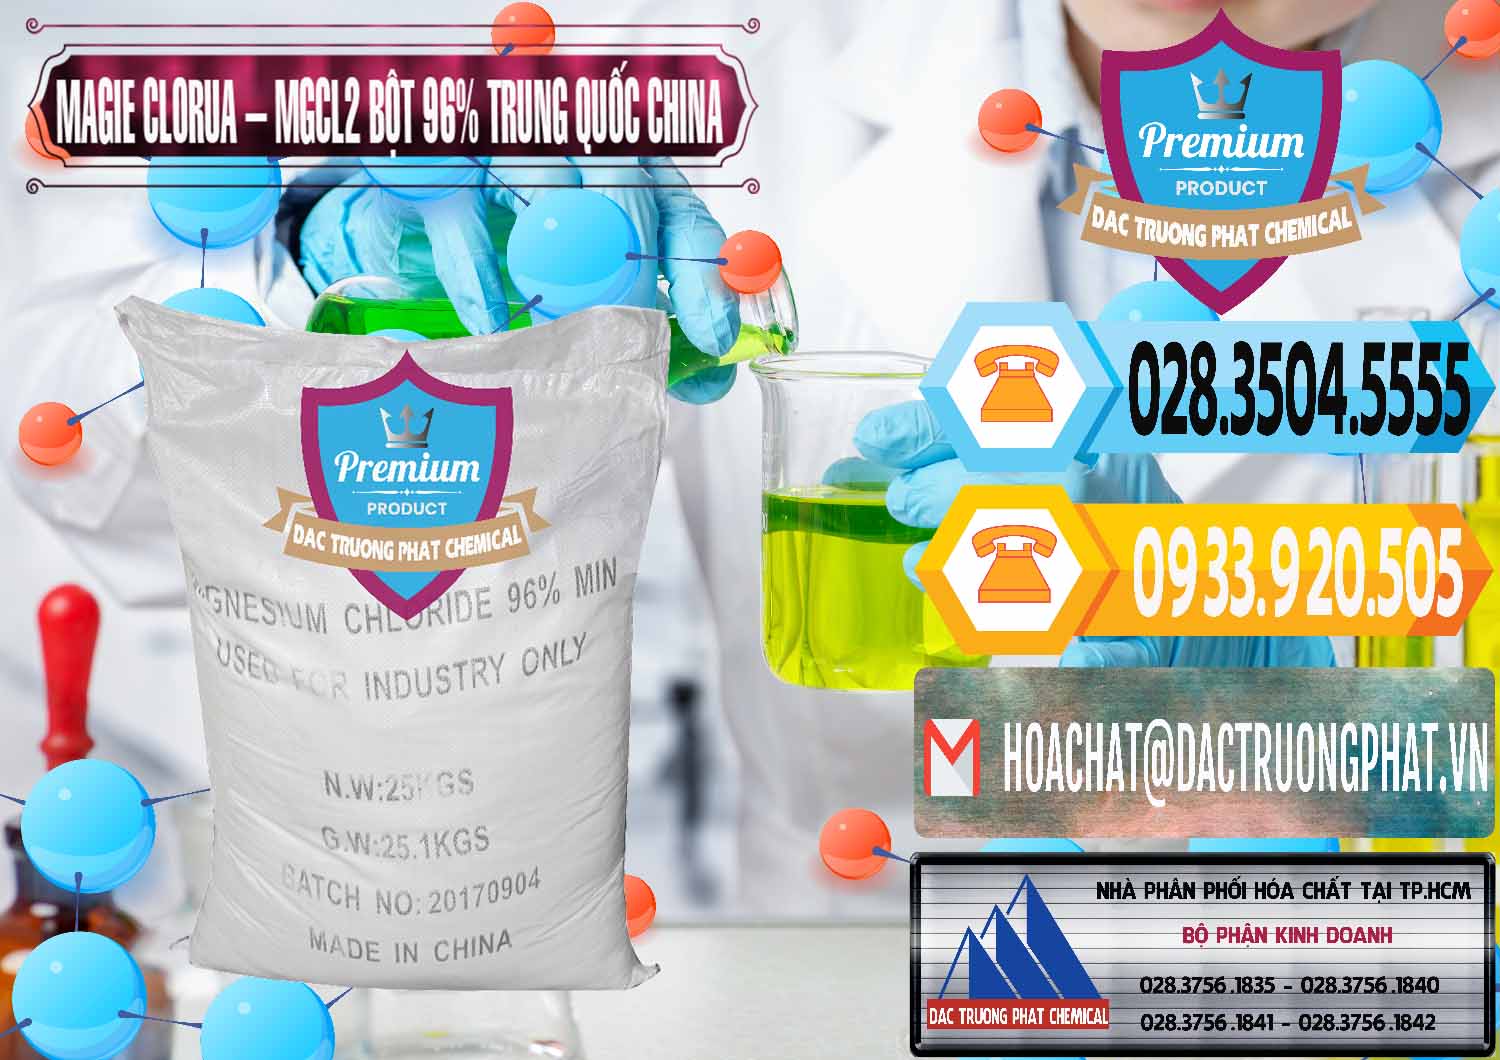 Đơn vị cung cấp - bán Magie Clorua – MGCL2 96% Dạng Bột Bao Chữ Đen Trung Quốc China - 0205 - Nơi phân phối ( bán ) hóa chất tại TP.HCM - hoachattayrua.net